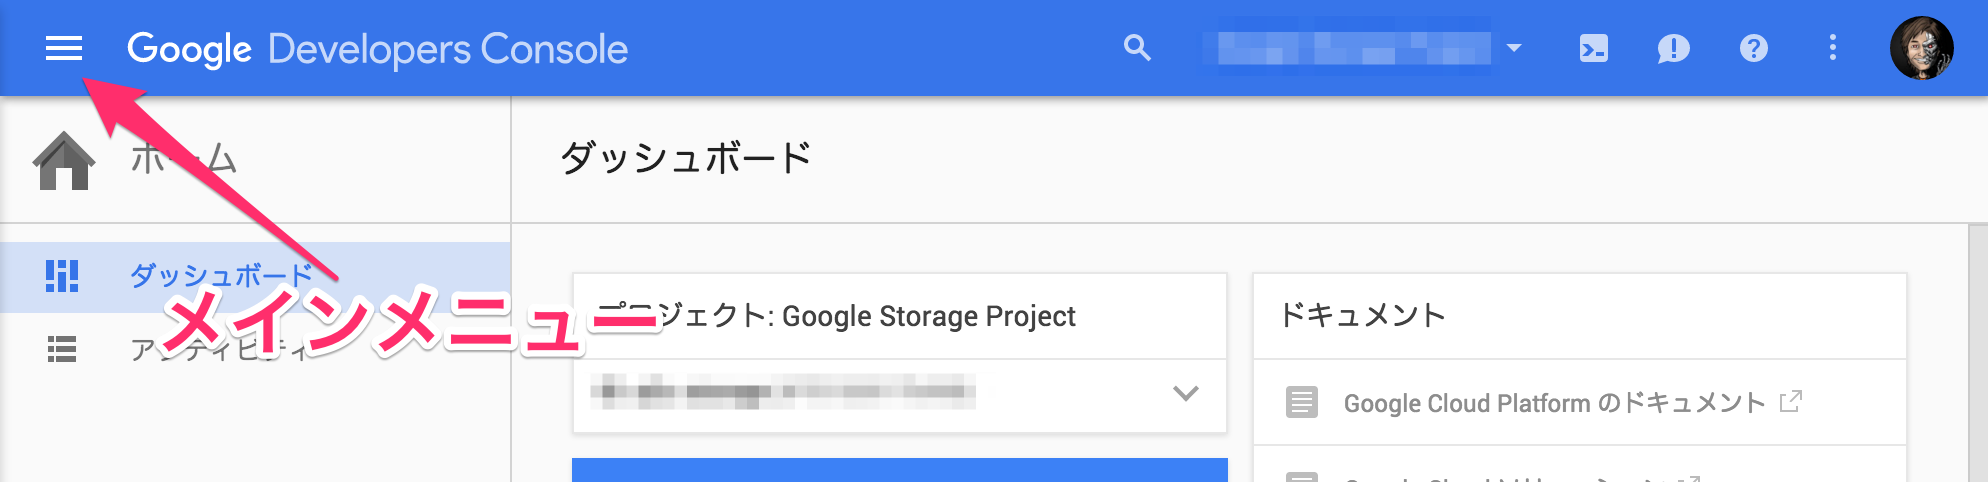 ホーム_-_Google_Storage_Project.png